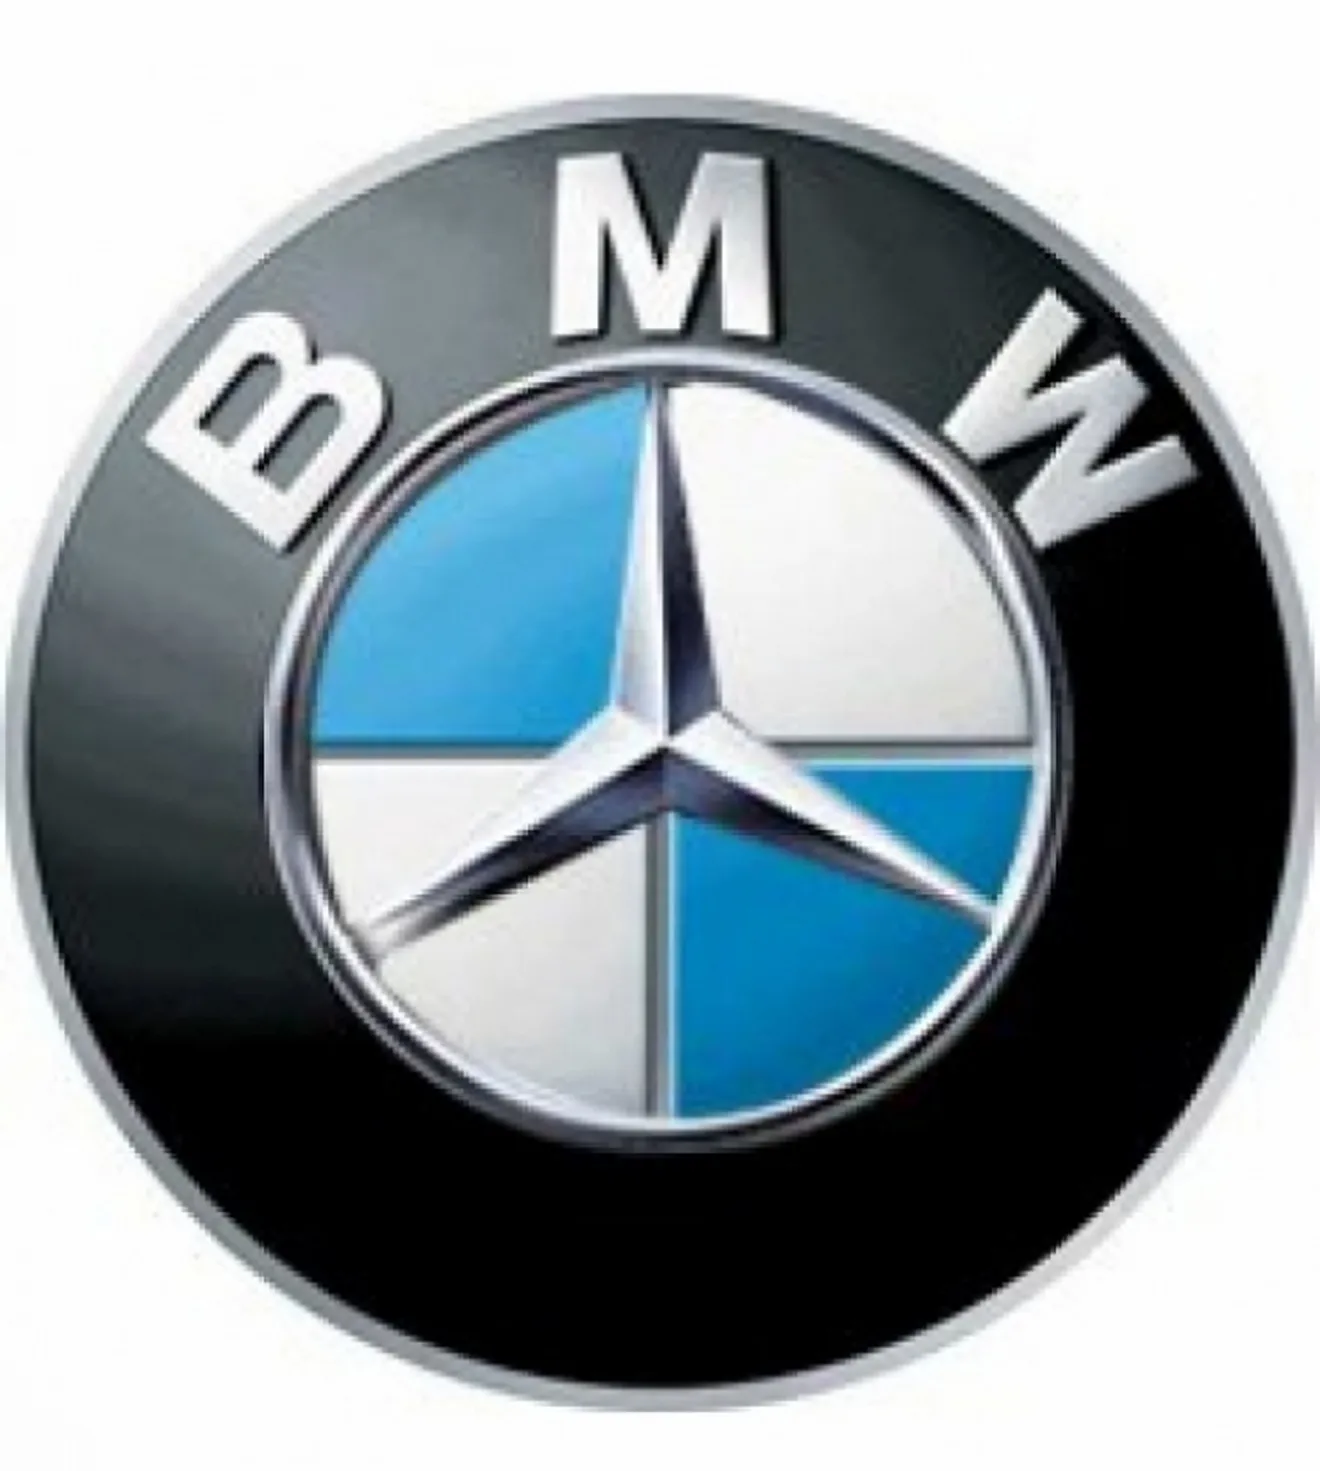 BMW espera ahorrar a medio plazo... gracias a Mercedes